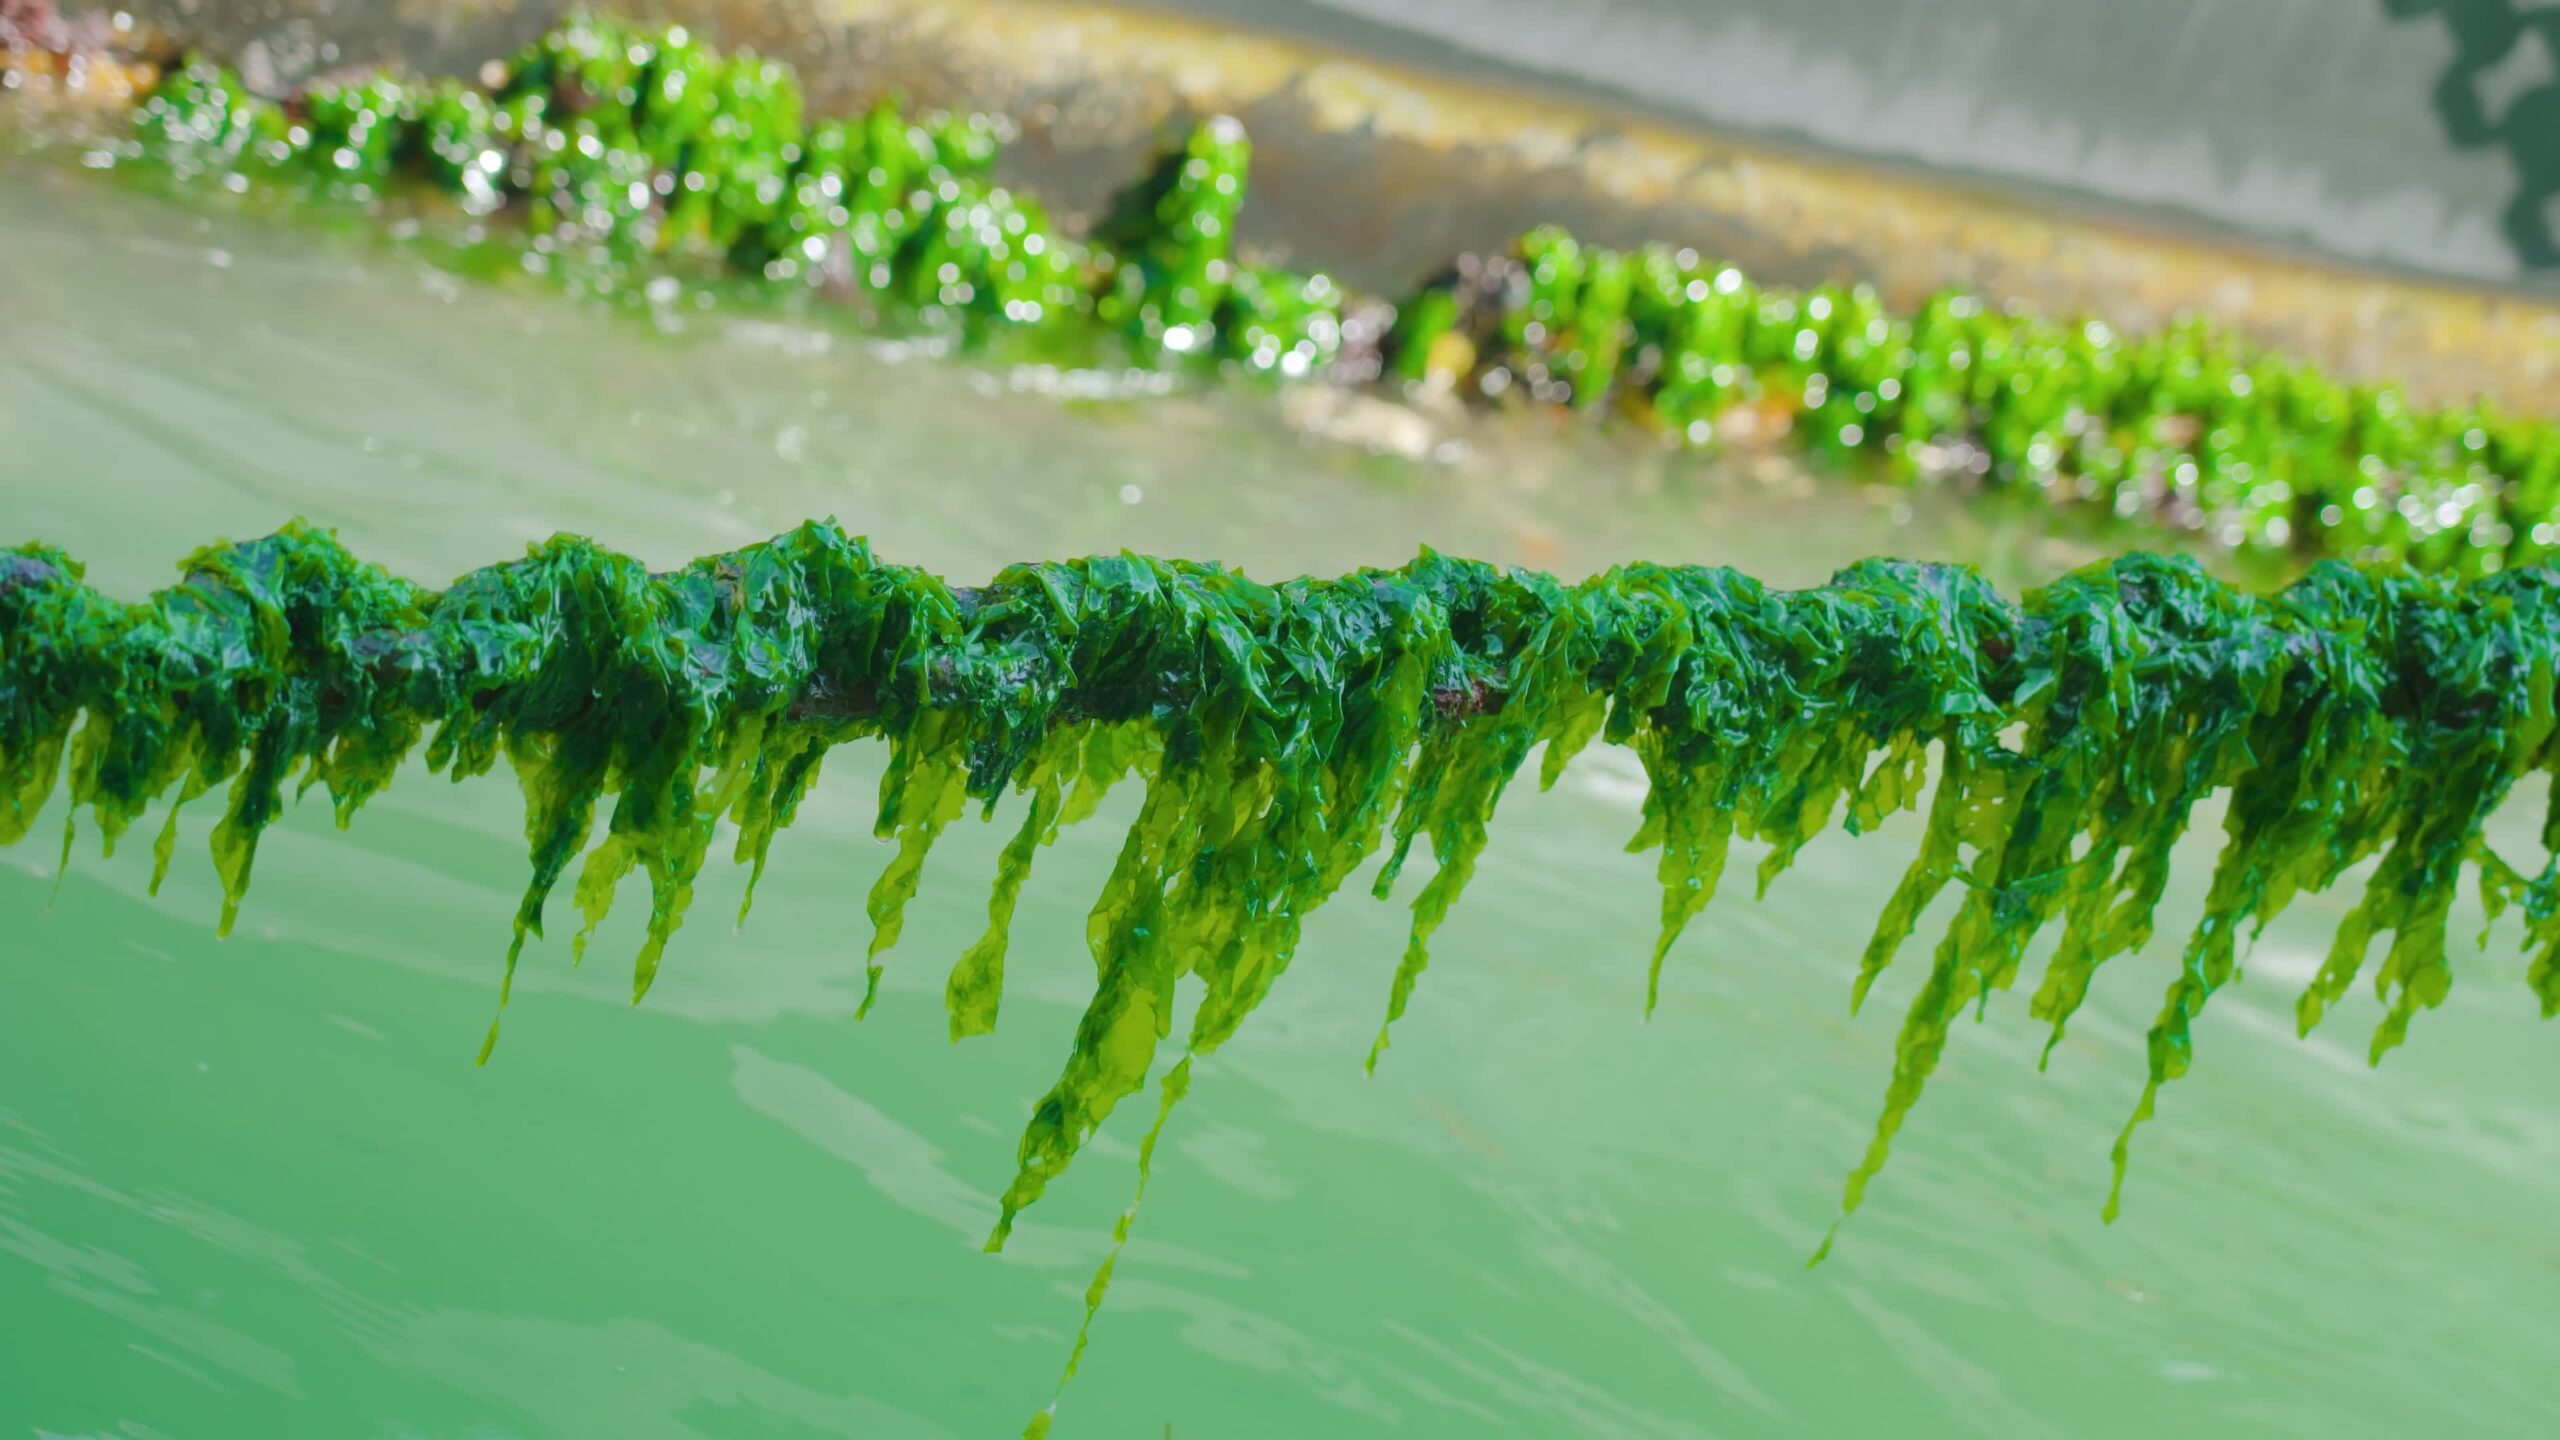 La fioritura delle alghe verdi pende dalle catene sopra i corsi d’acqua veneziani